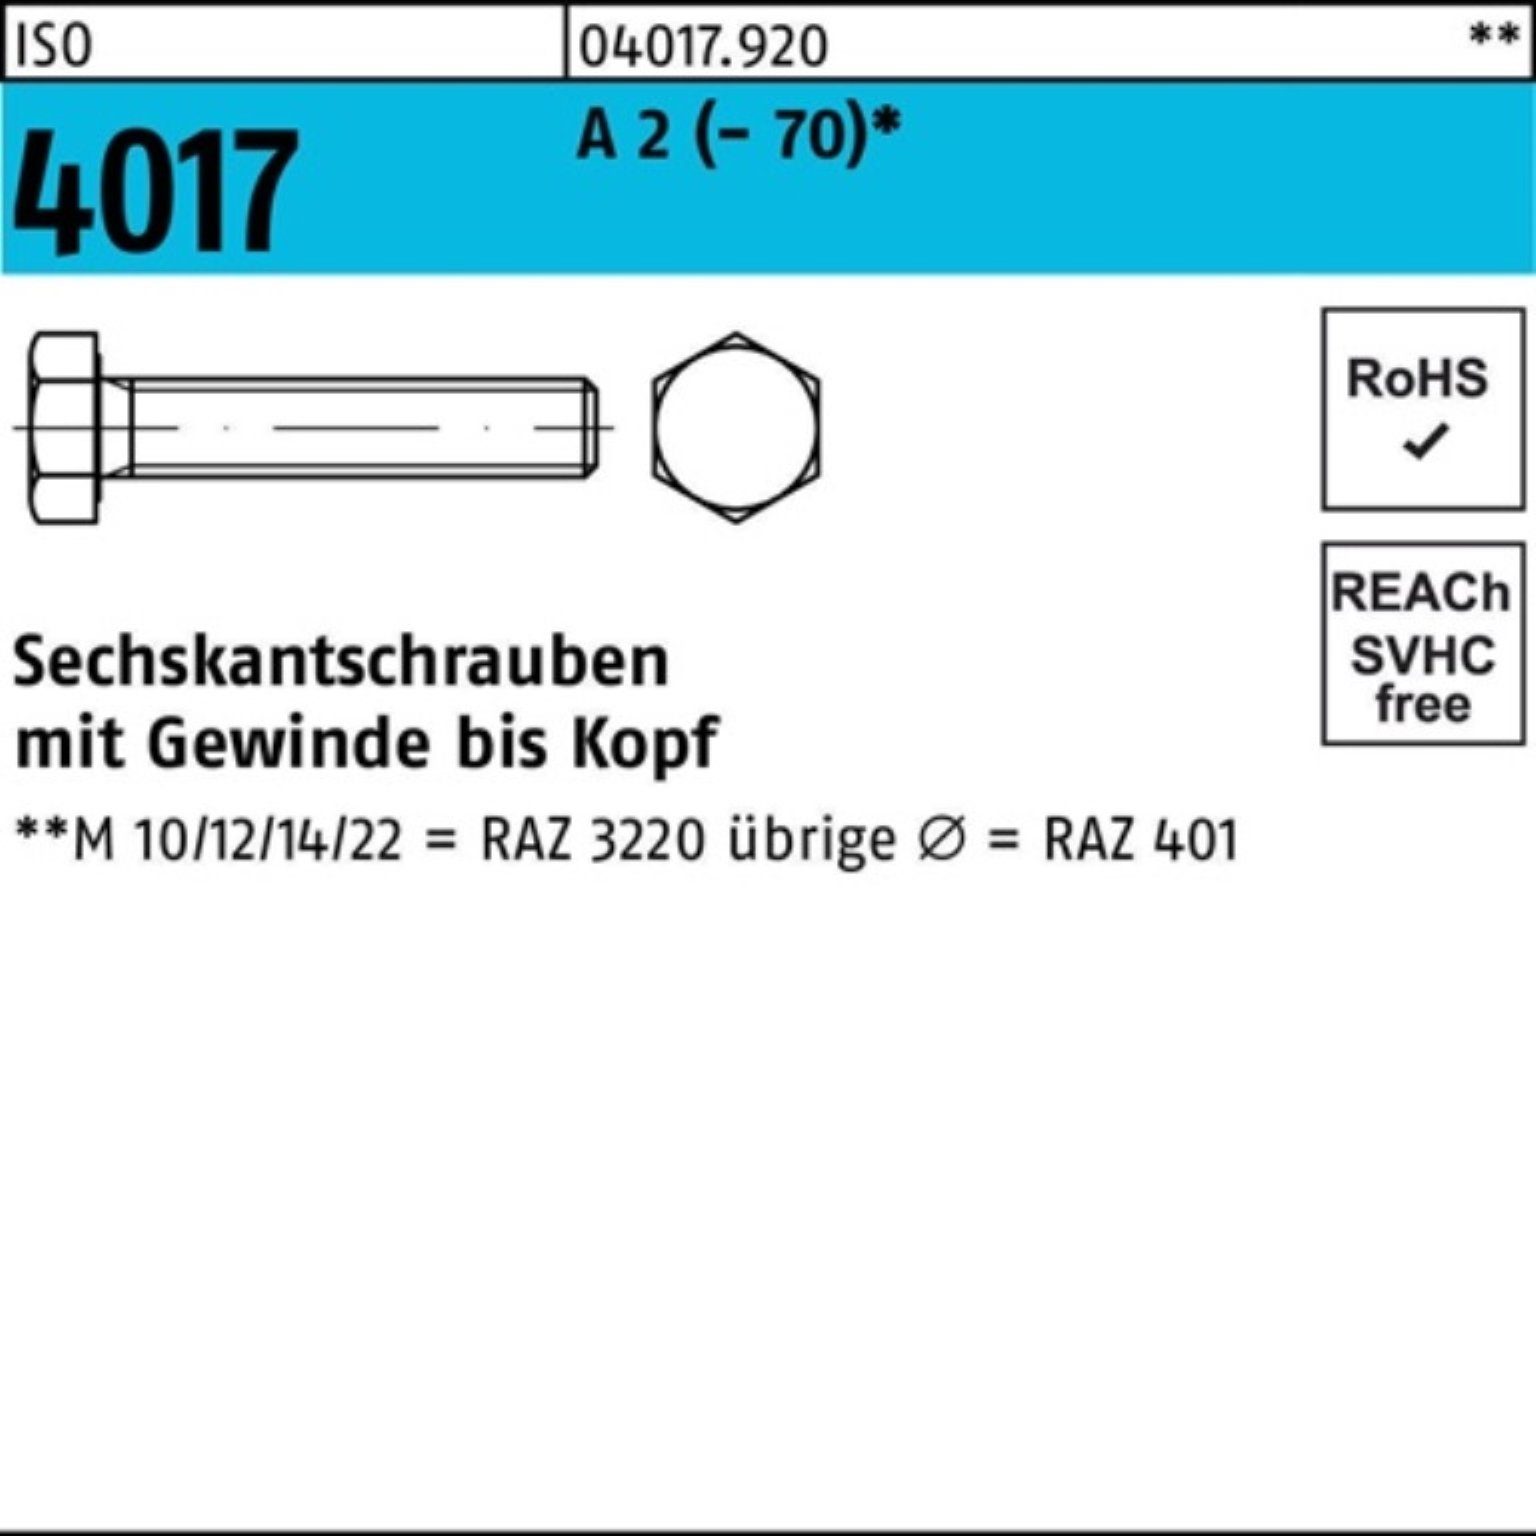 Bufab Sechskantschraube 200er Pack Sechskantschraube ISO 4017 VG M6x 22 A 2 (70) 200 Stück